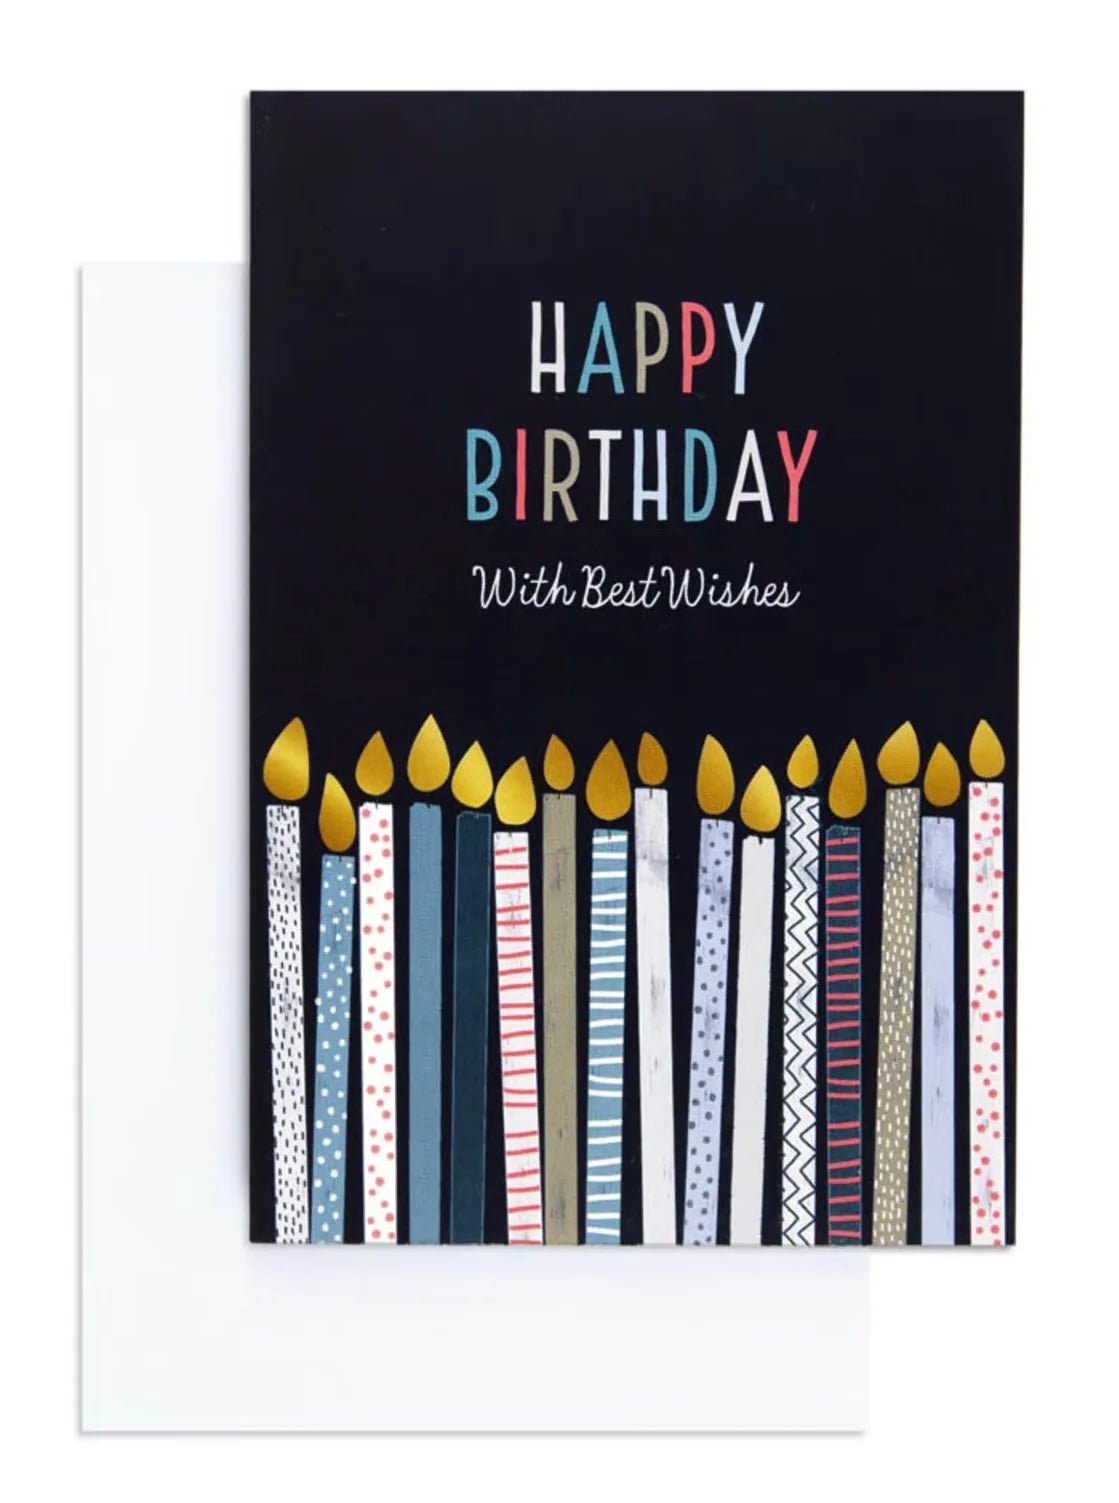 Best wishes birthday card